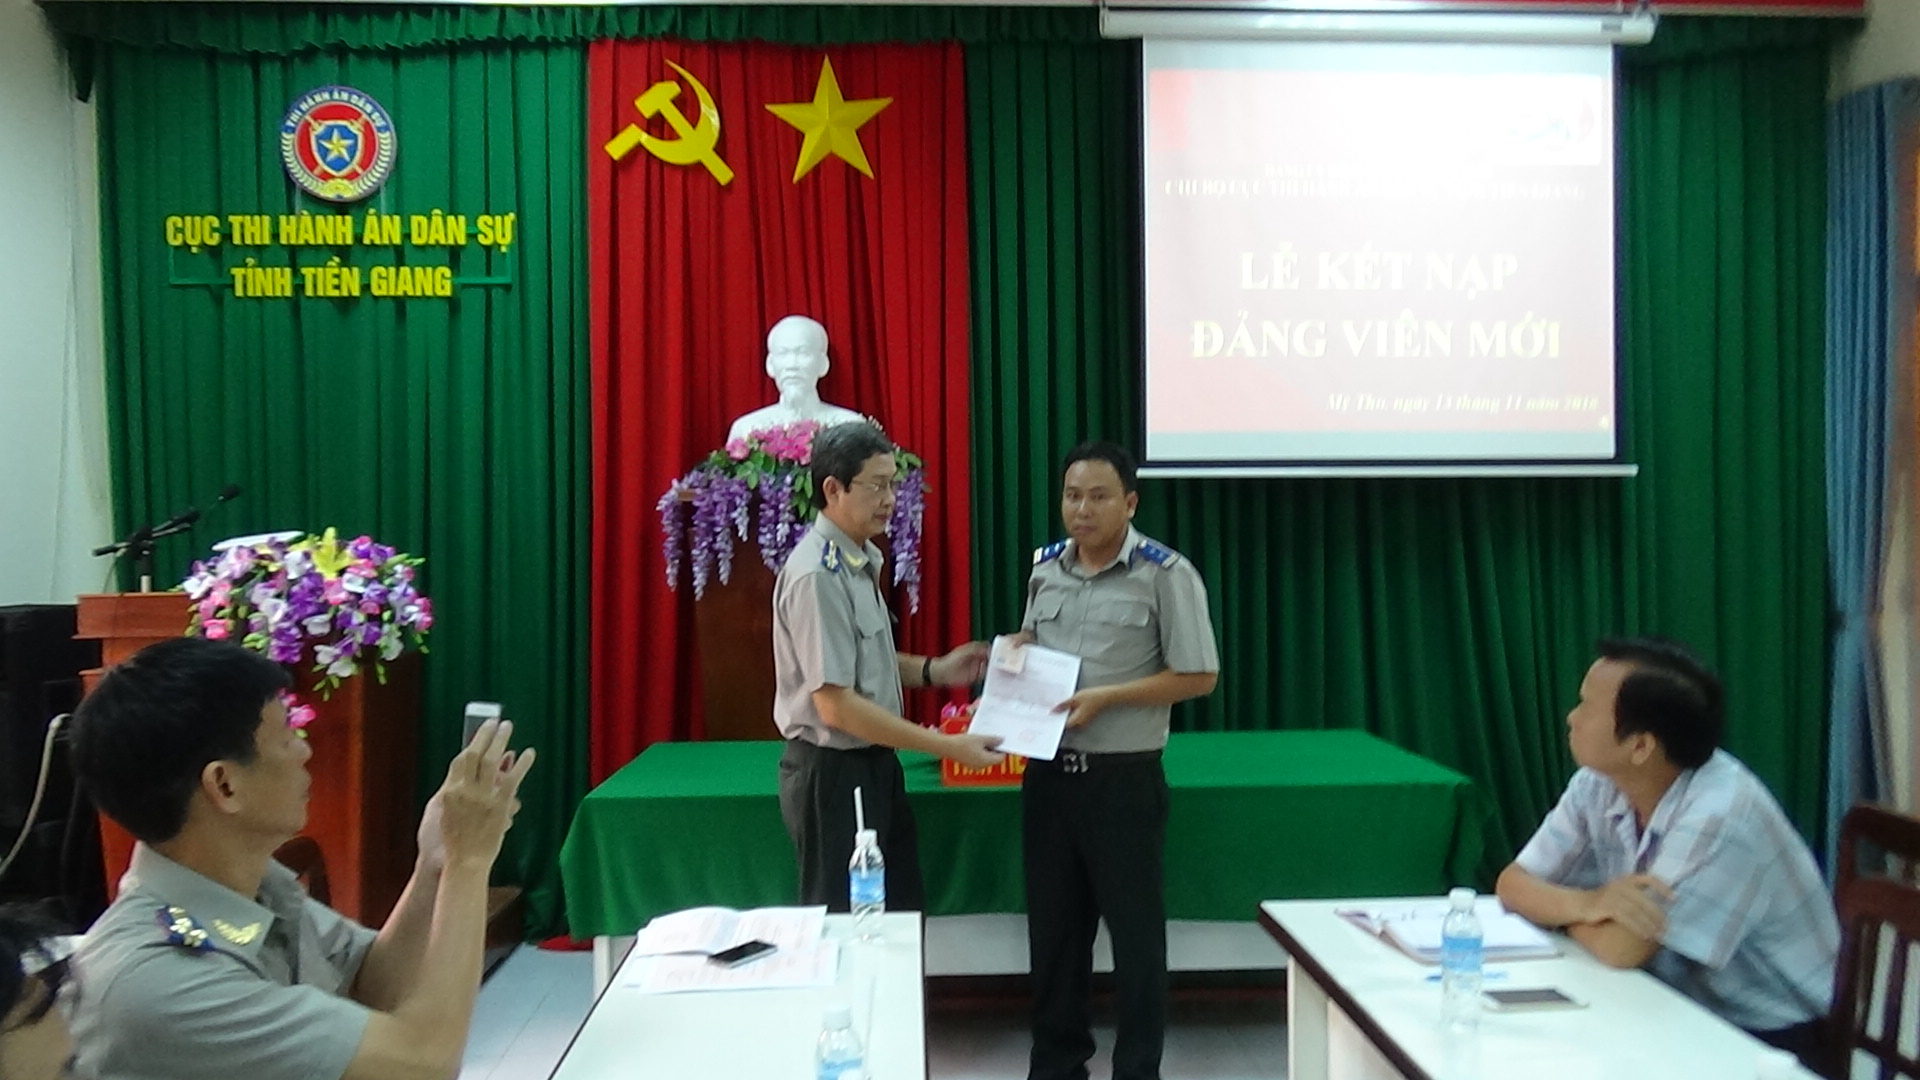 Đồng chí Trần Minh Tuấn – Bí thư Chi bộ trao Quyết định cấp thẻ Đảng viên